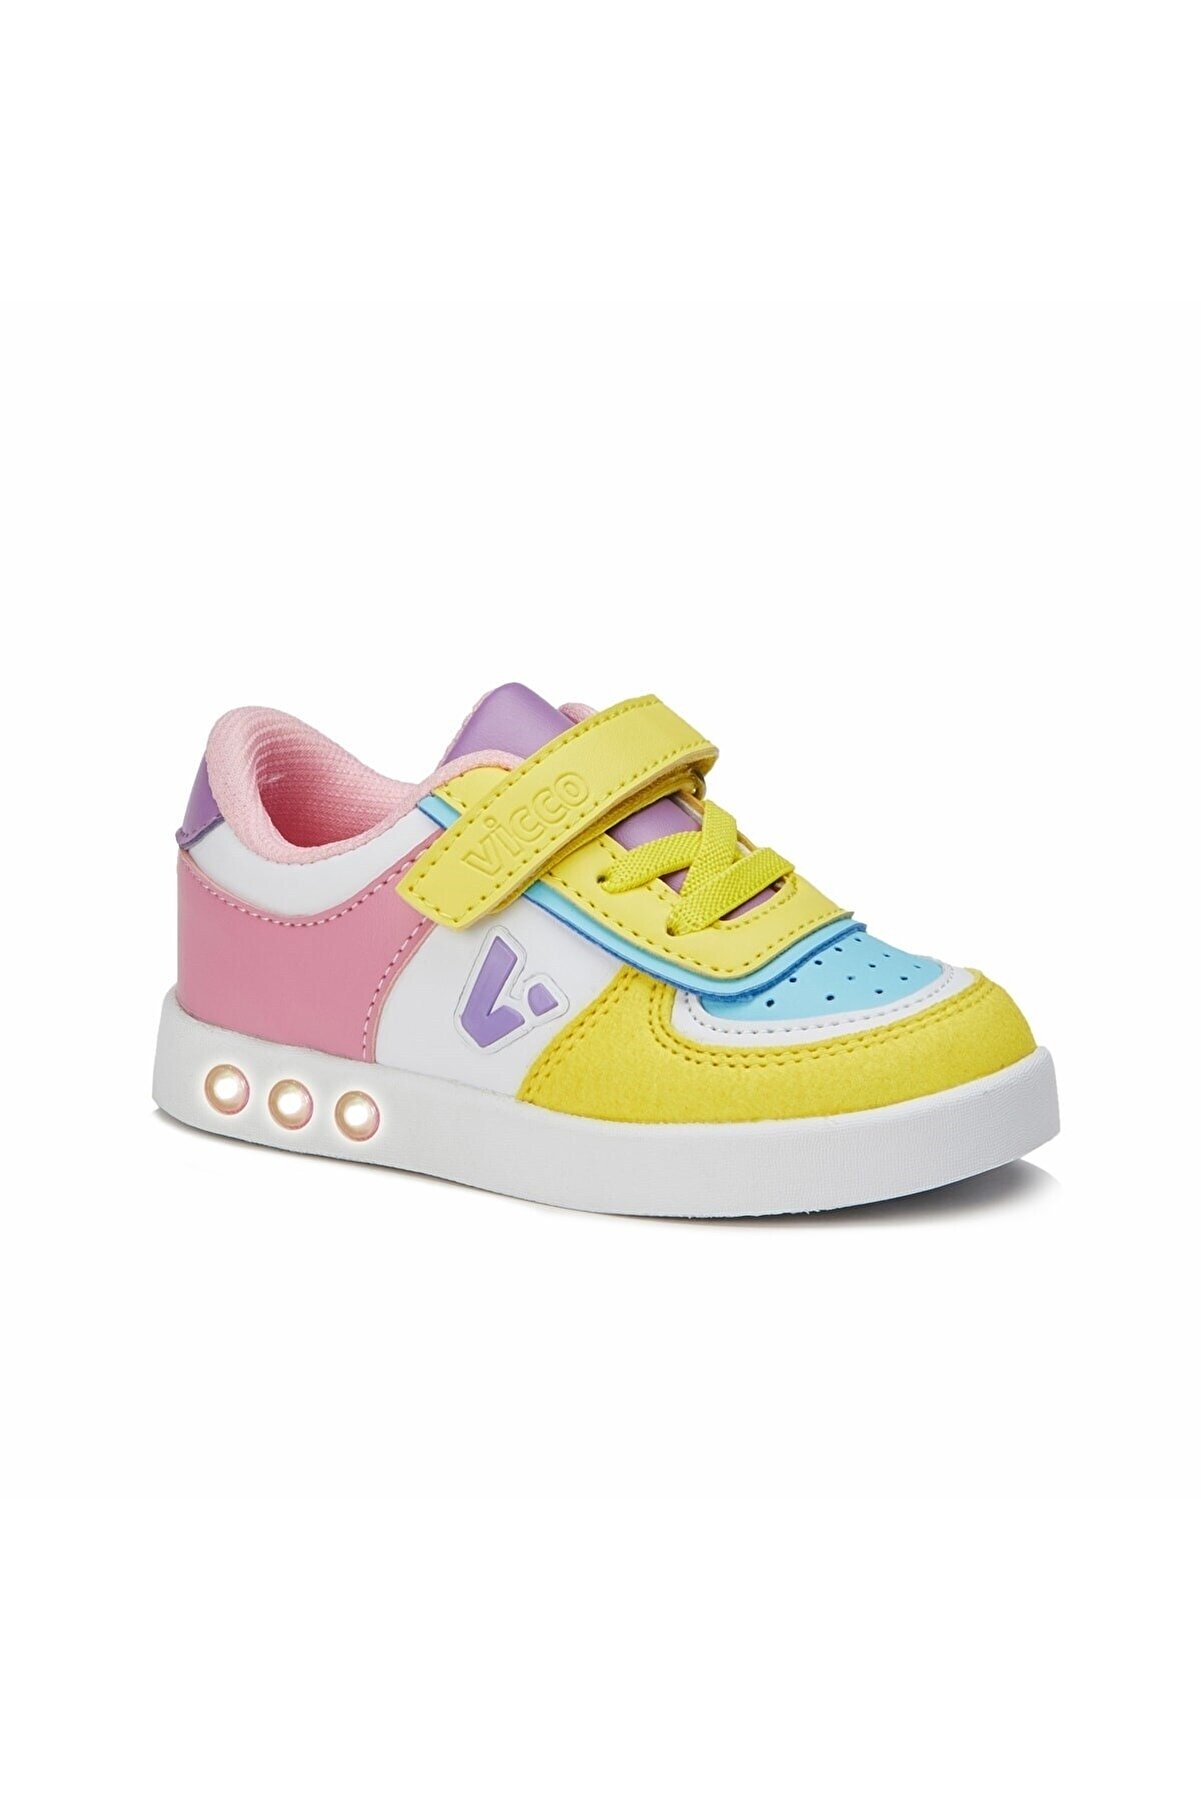 Vicco Sam Işıklı Kız Bebe Sarı Sneaker